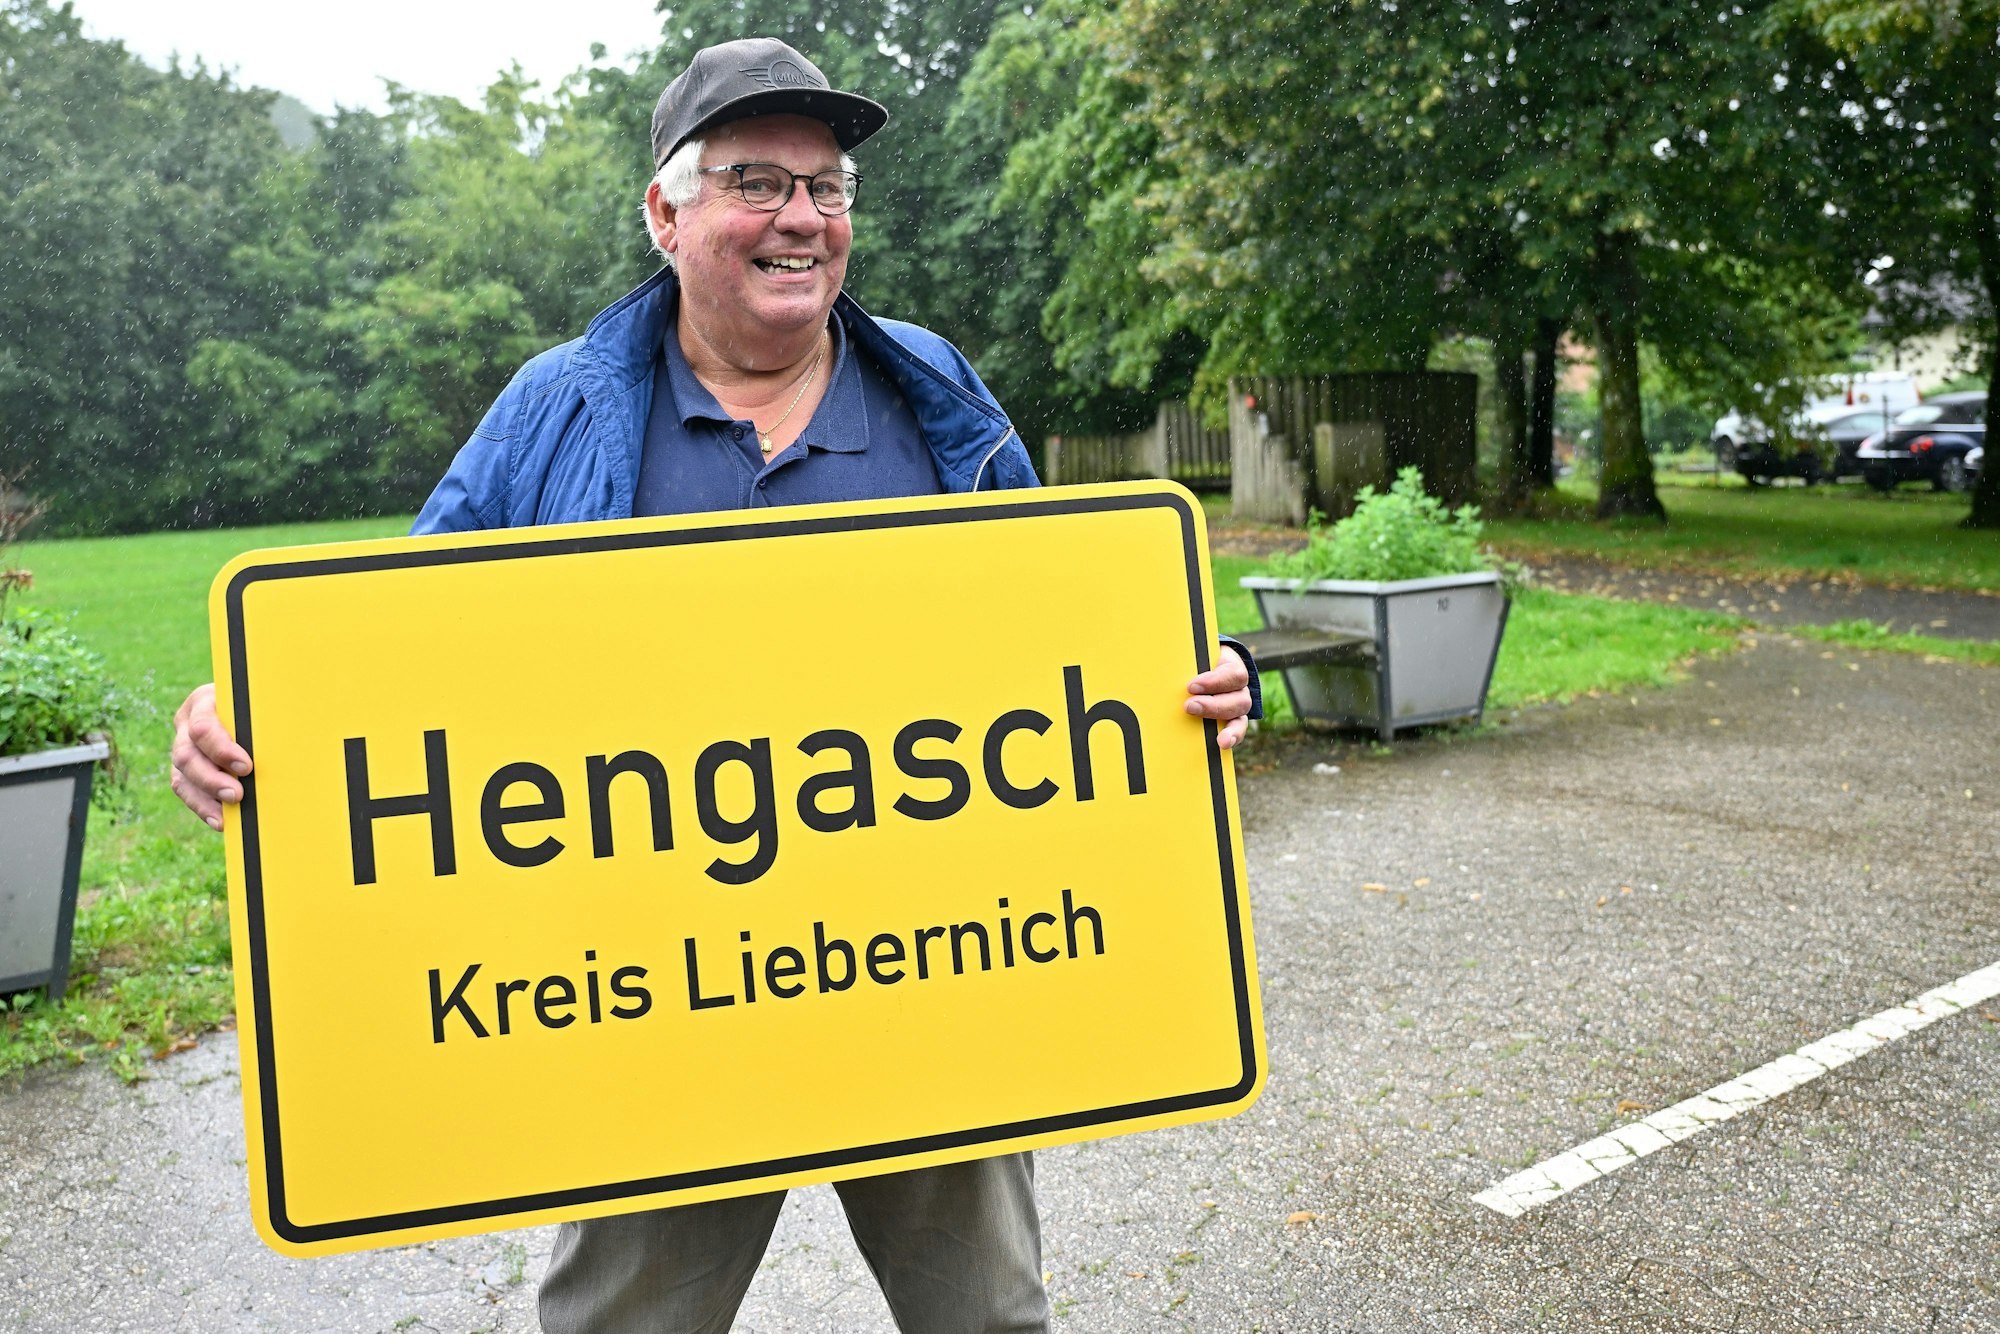 Ein Mann hält eine gelbe Ortstafel in Händen, auf dieser steht: Hengasch Kreis Liebernich.